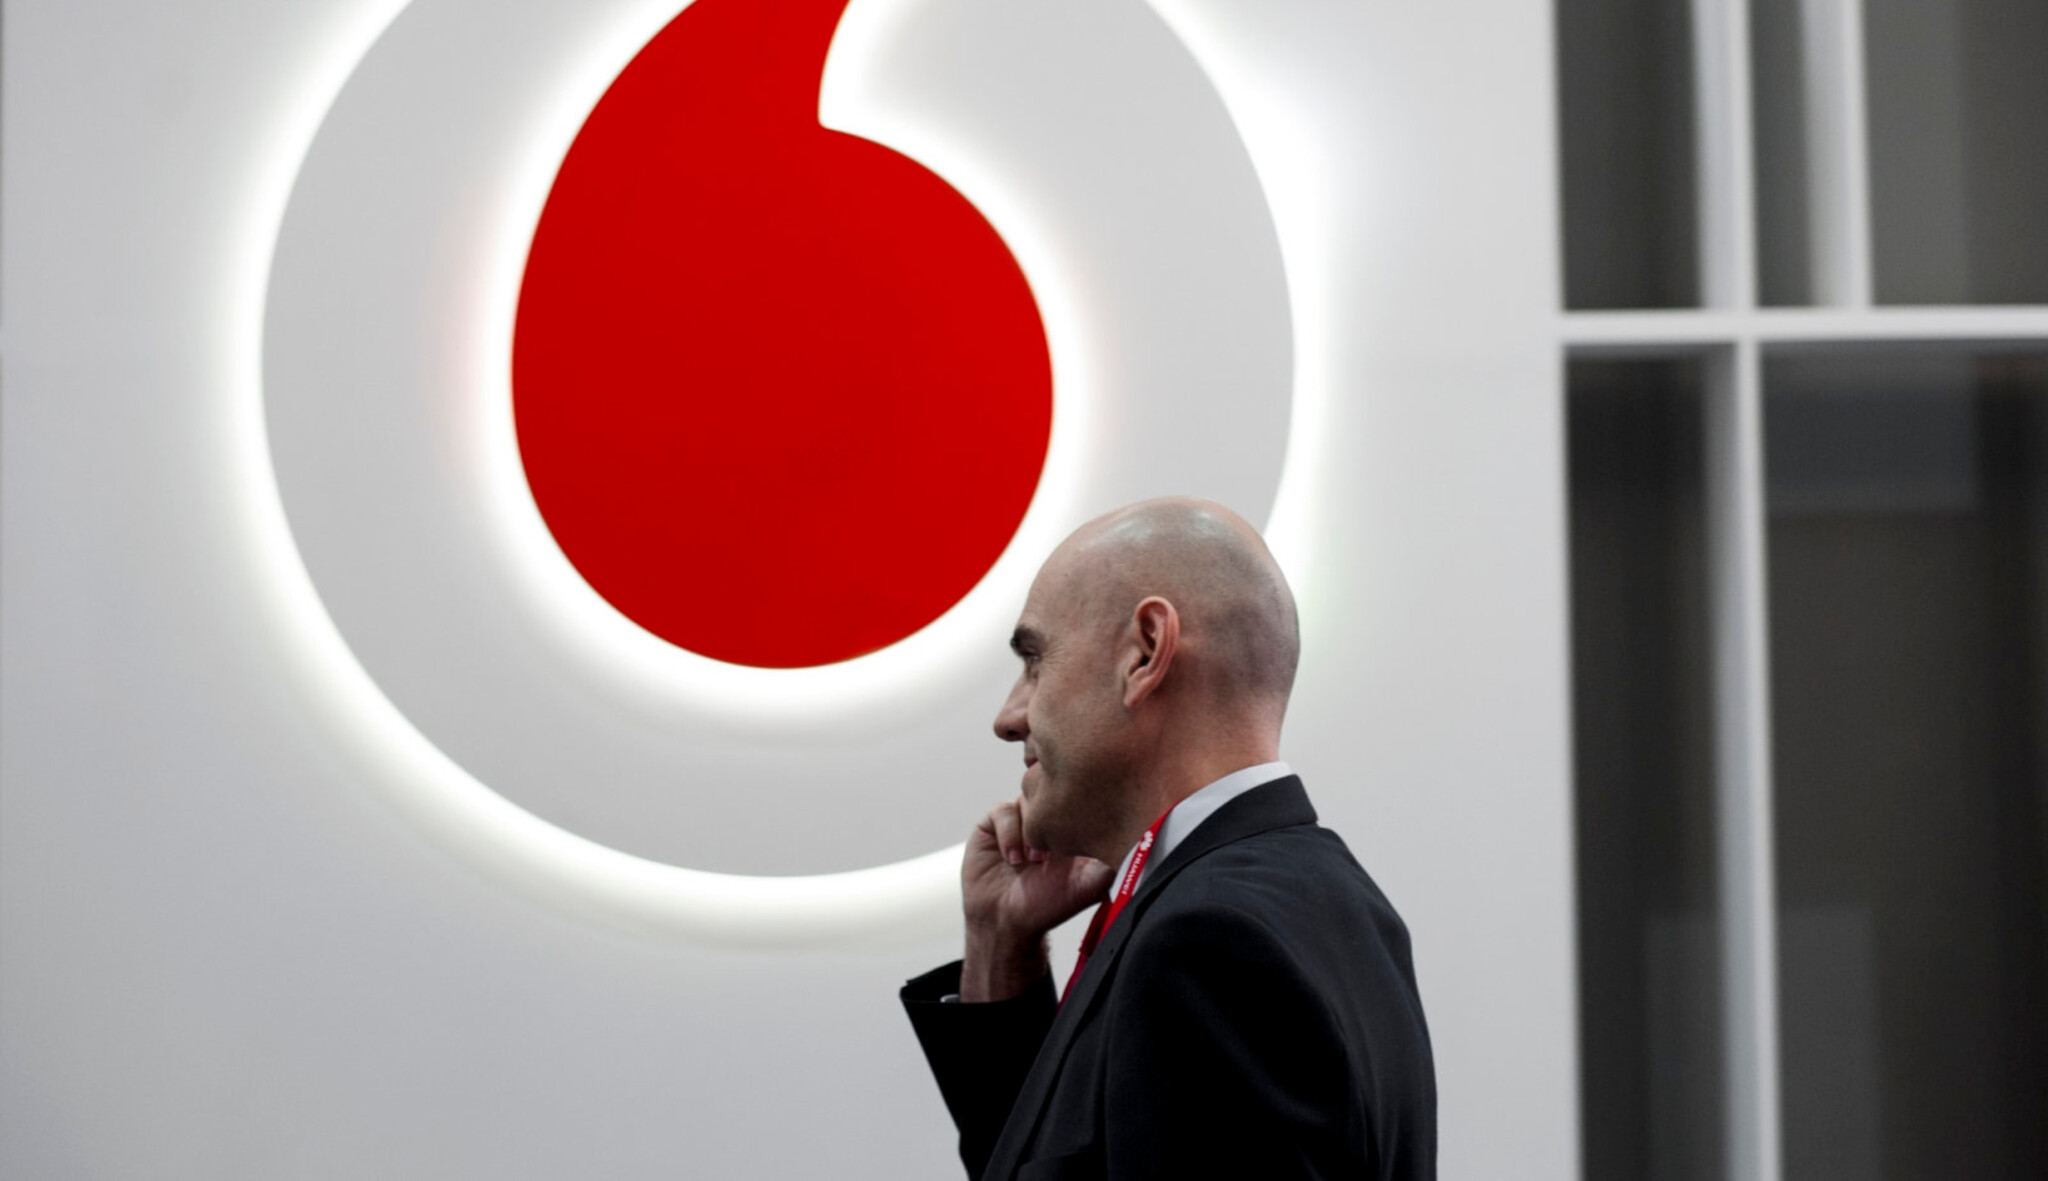 Revoluce na trhu práce. Vodafone nabídne částečné úvazky u všech pozic včetně vedení